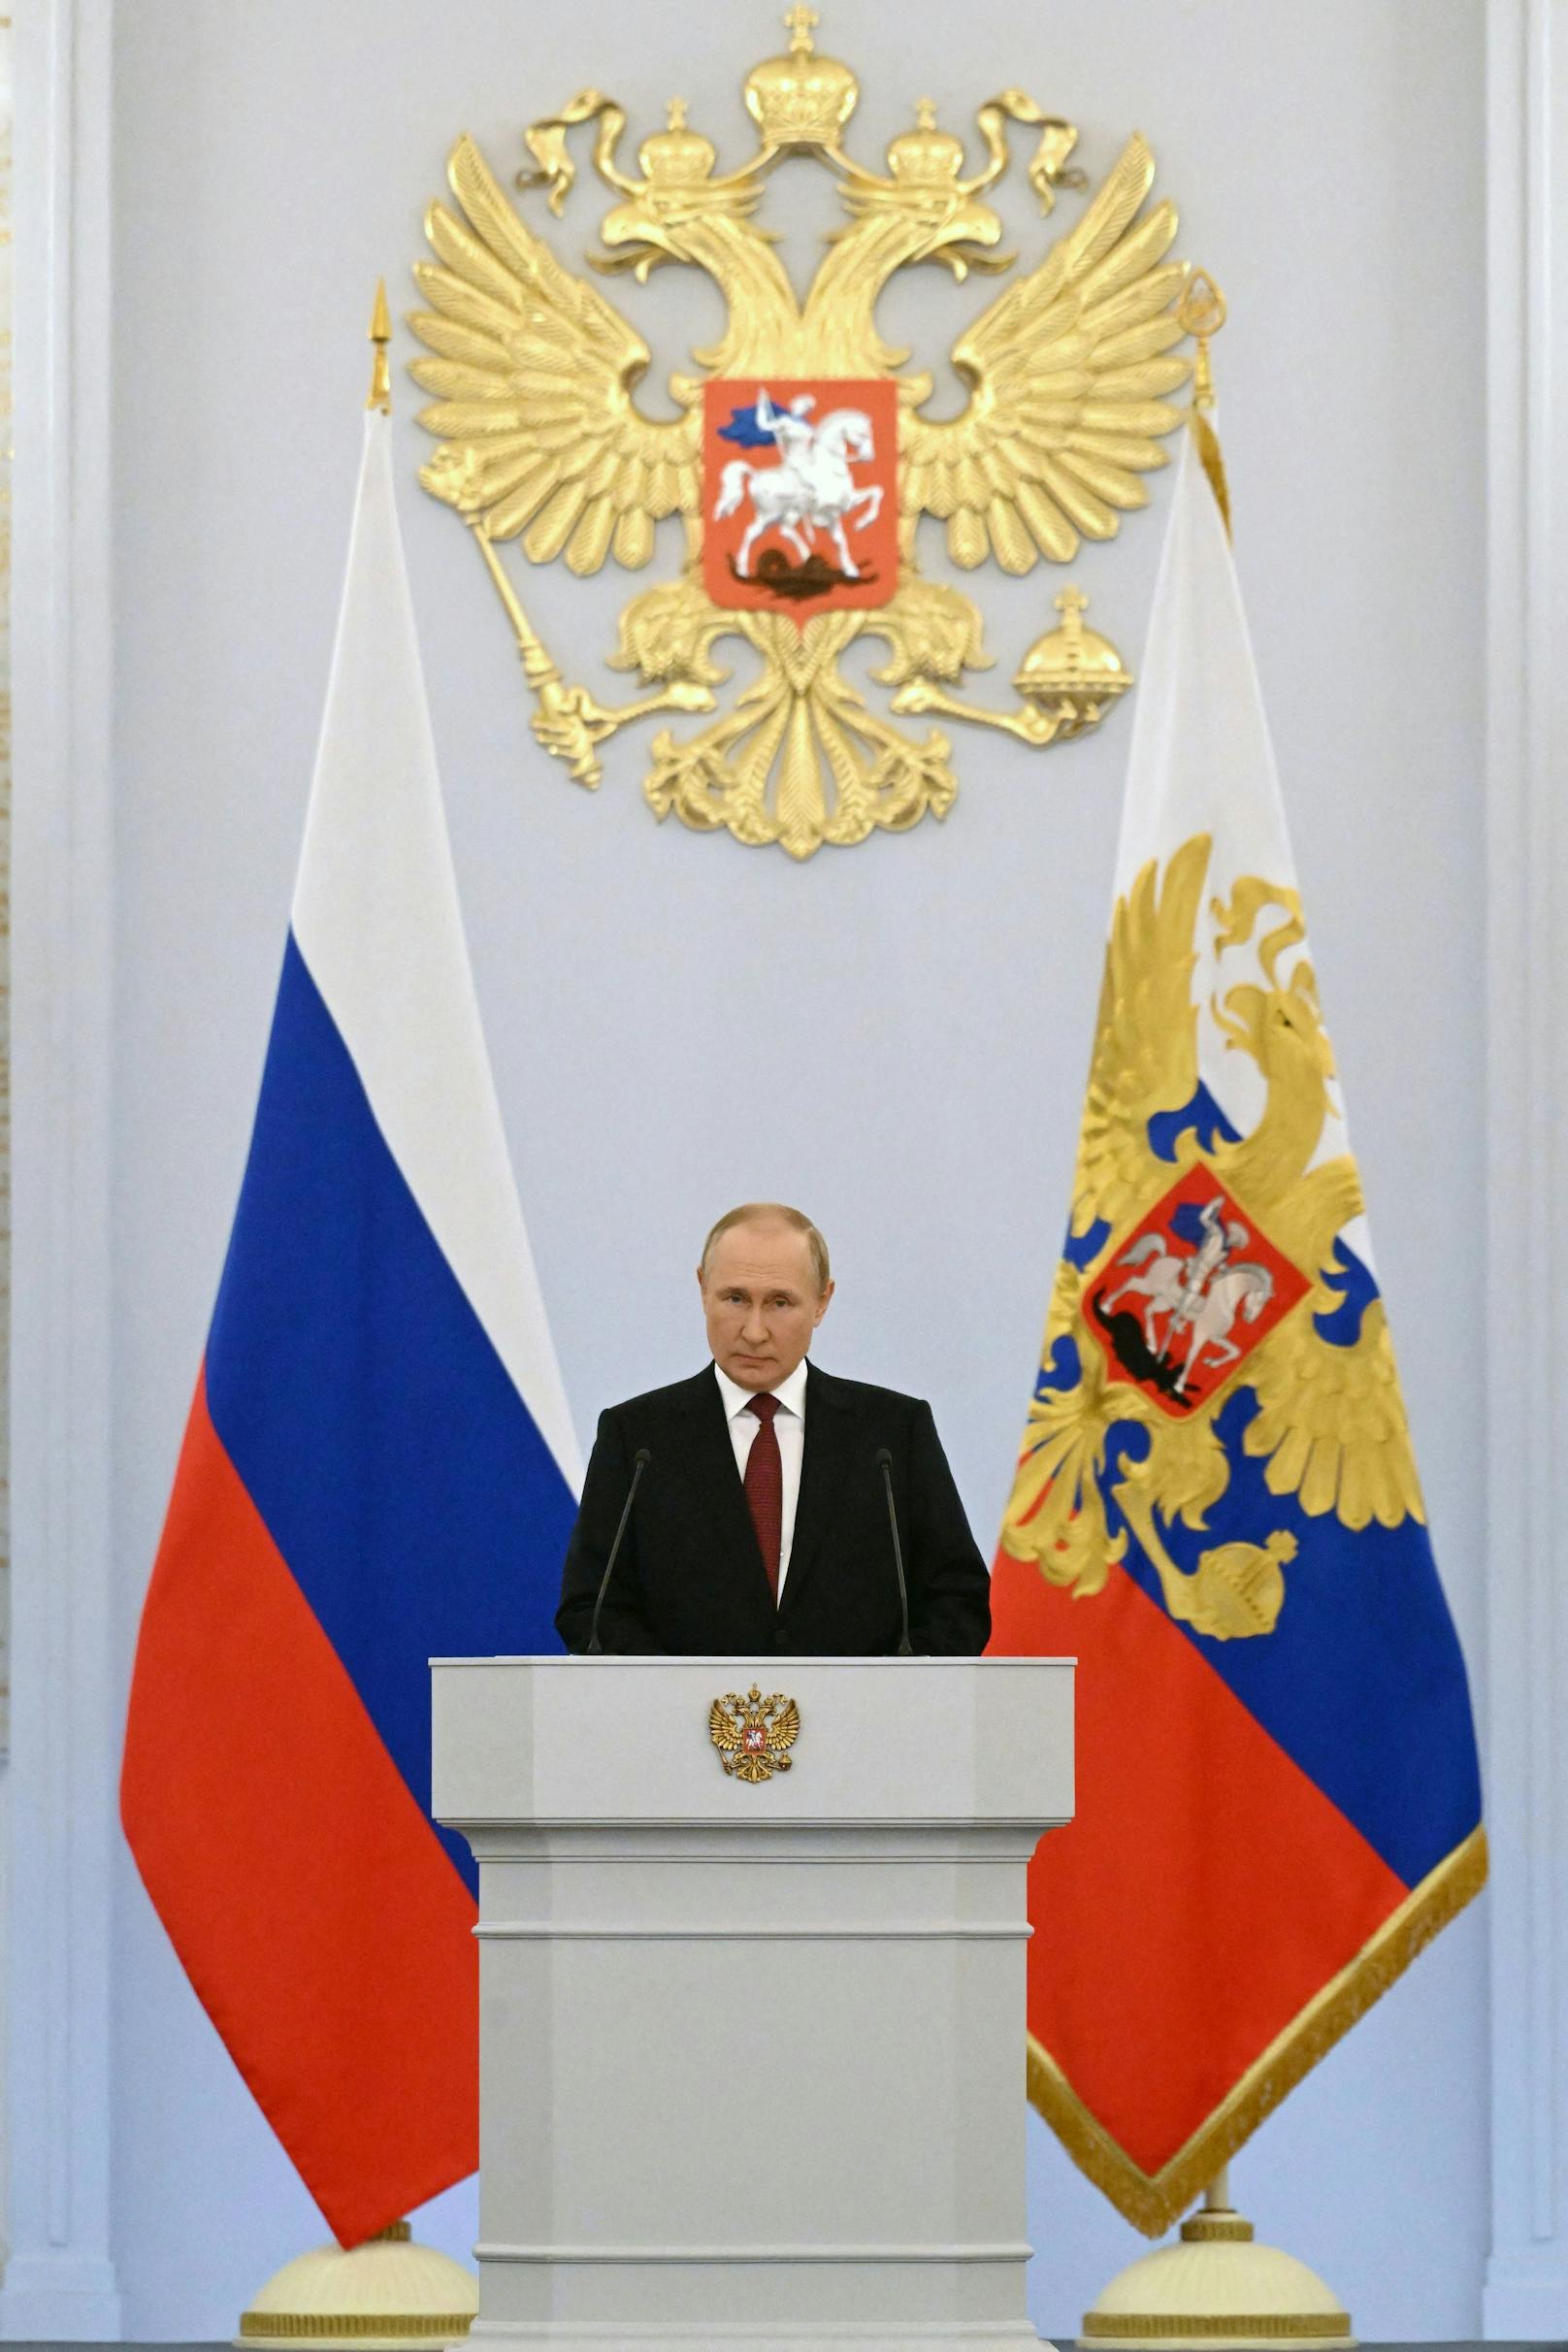 Russland fühle sich in der Verantwortung, gegen das "neokoloniale" Modell des Westens vorzugehen.